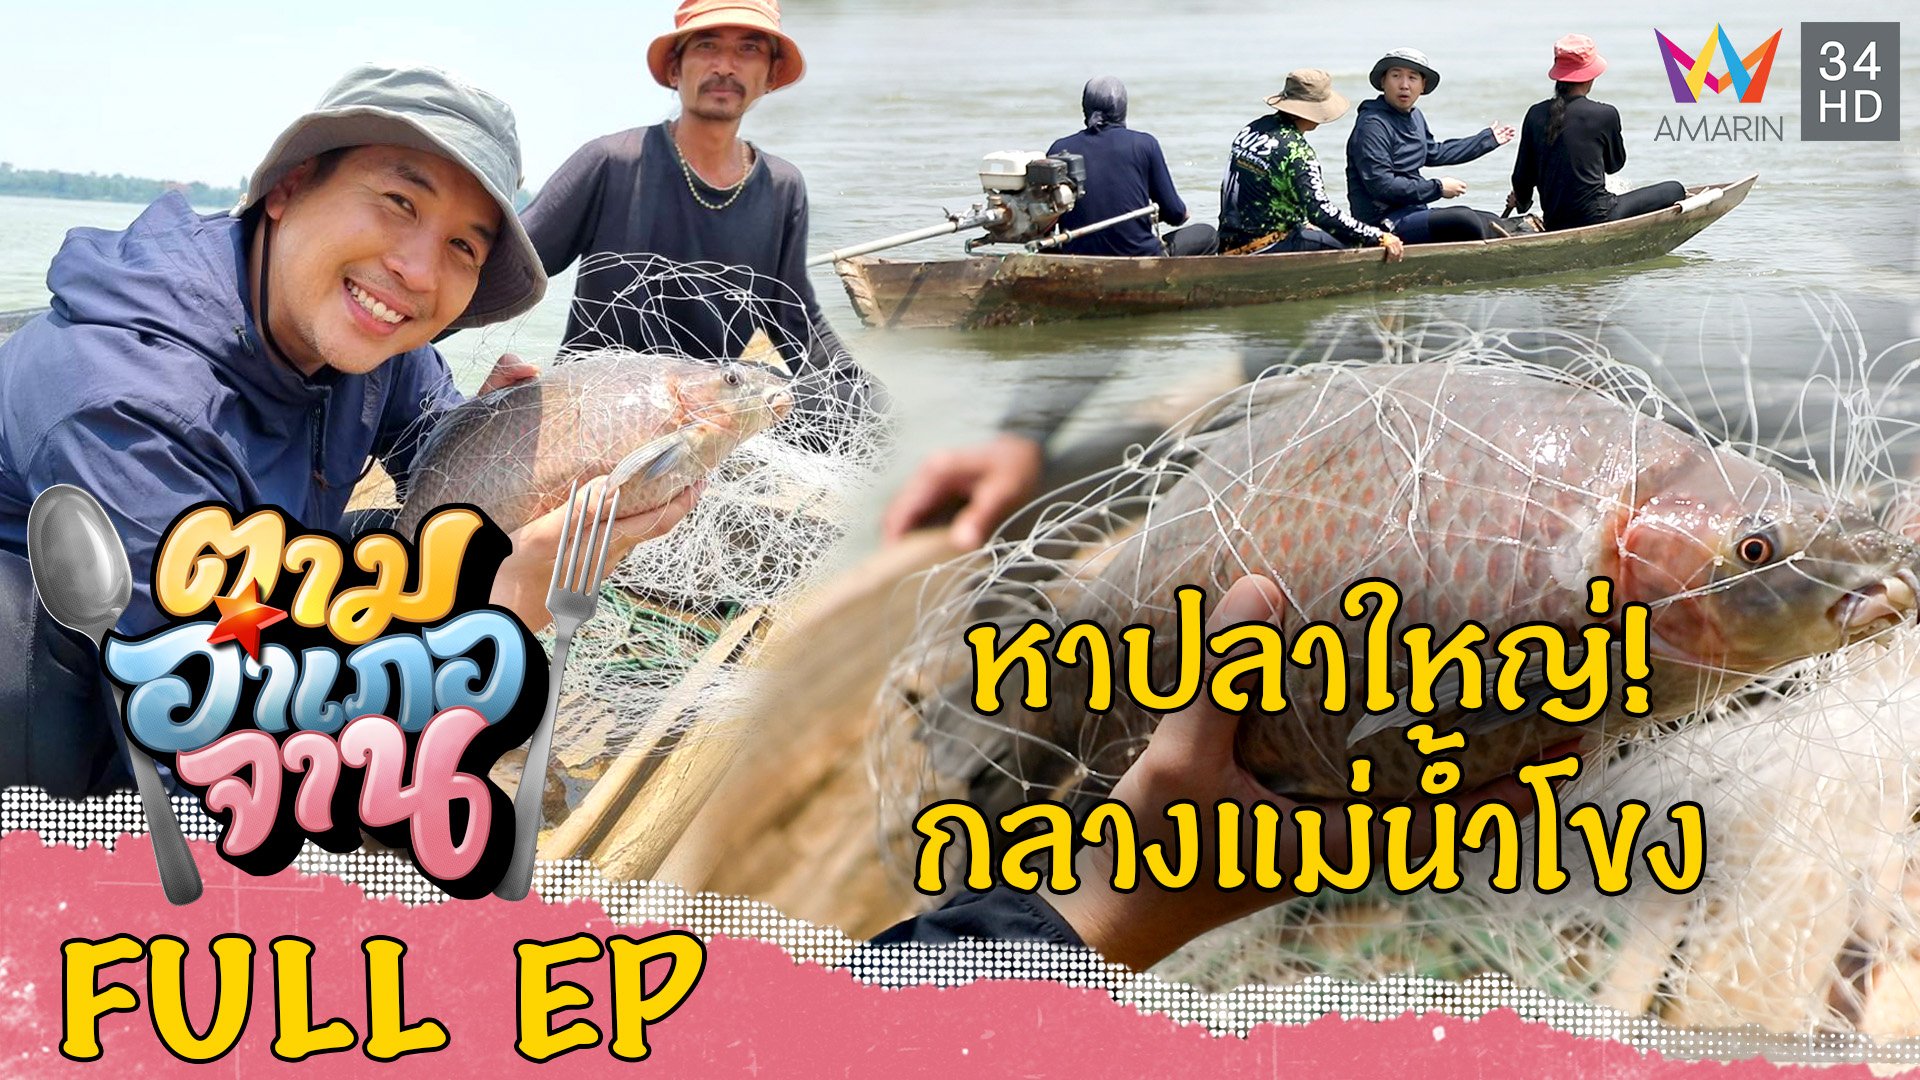 ทอดแหหาปลาแม่น้ำโขง อ.หว้านใหญ่ จ.มุกดาหาร | ตามอำเภอจาน | 22 ก.ค. 66 | AMARIN TVHD34